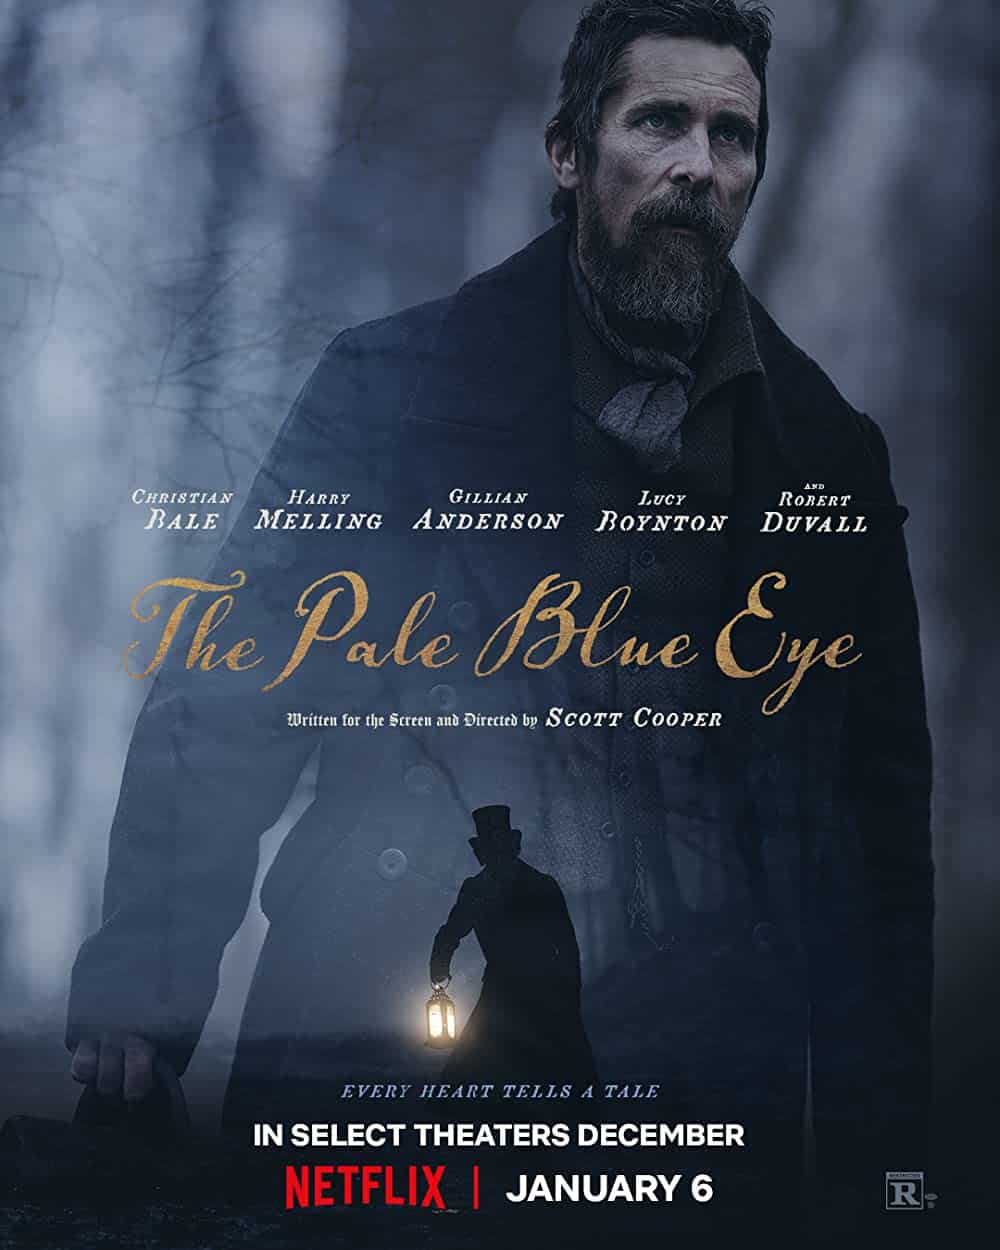 The Pale Blue Eye - Book vs. Movie 